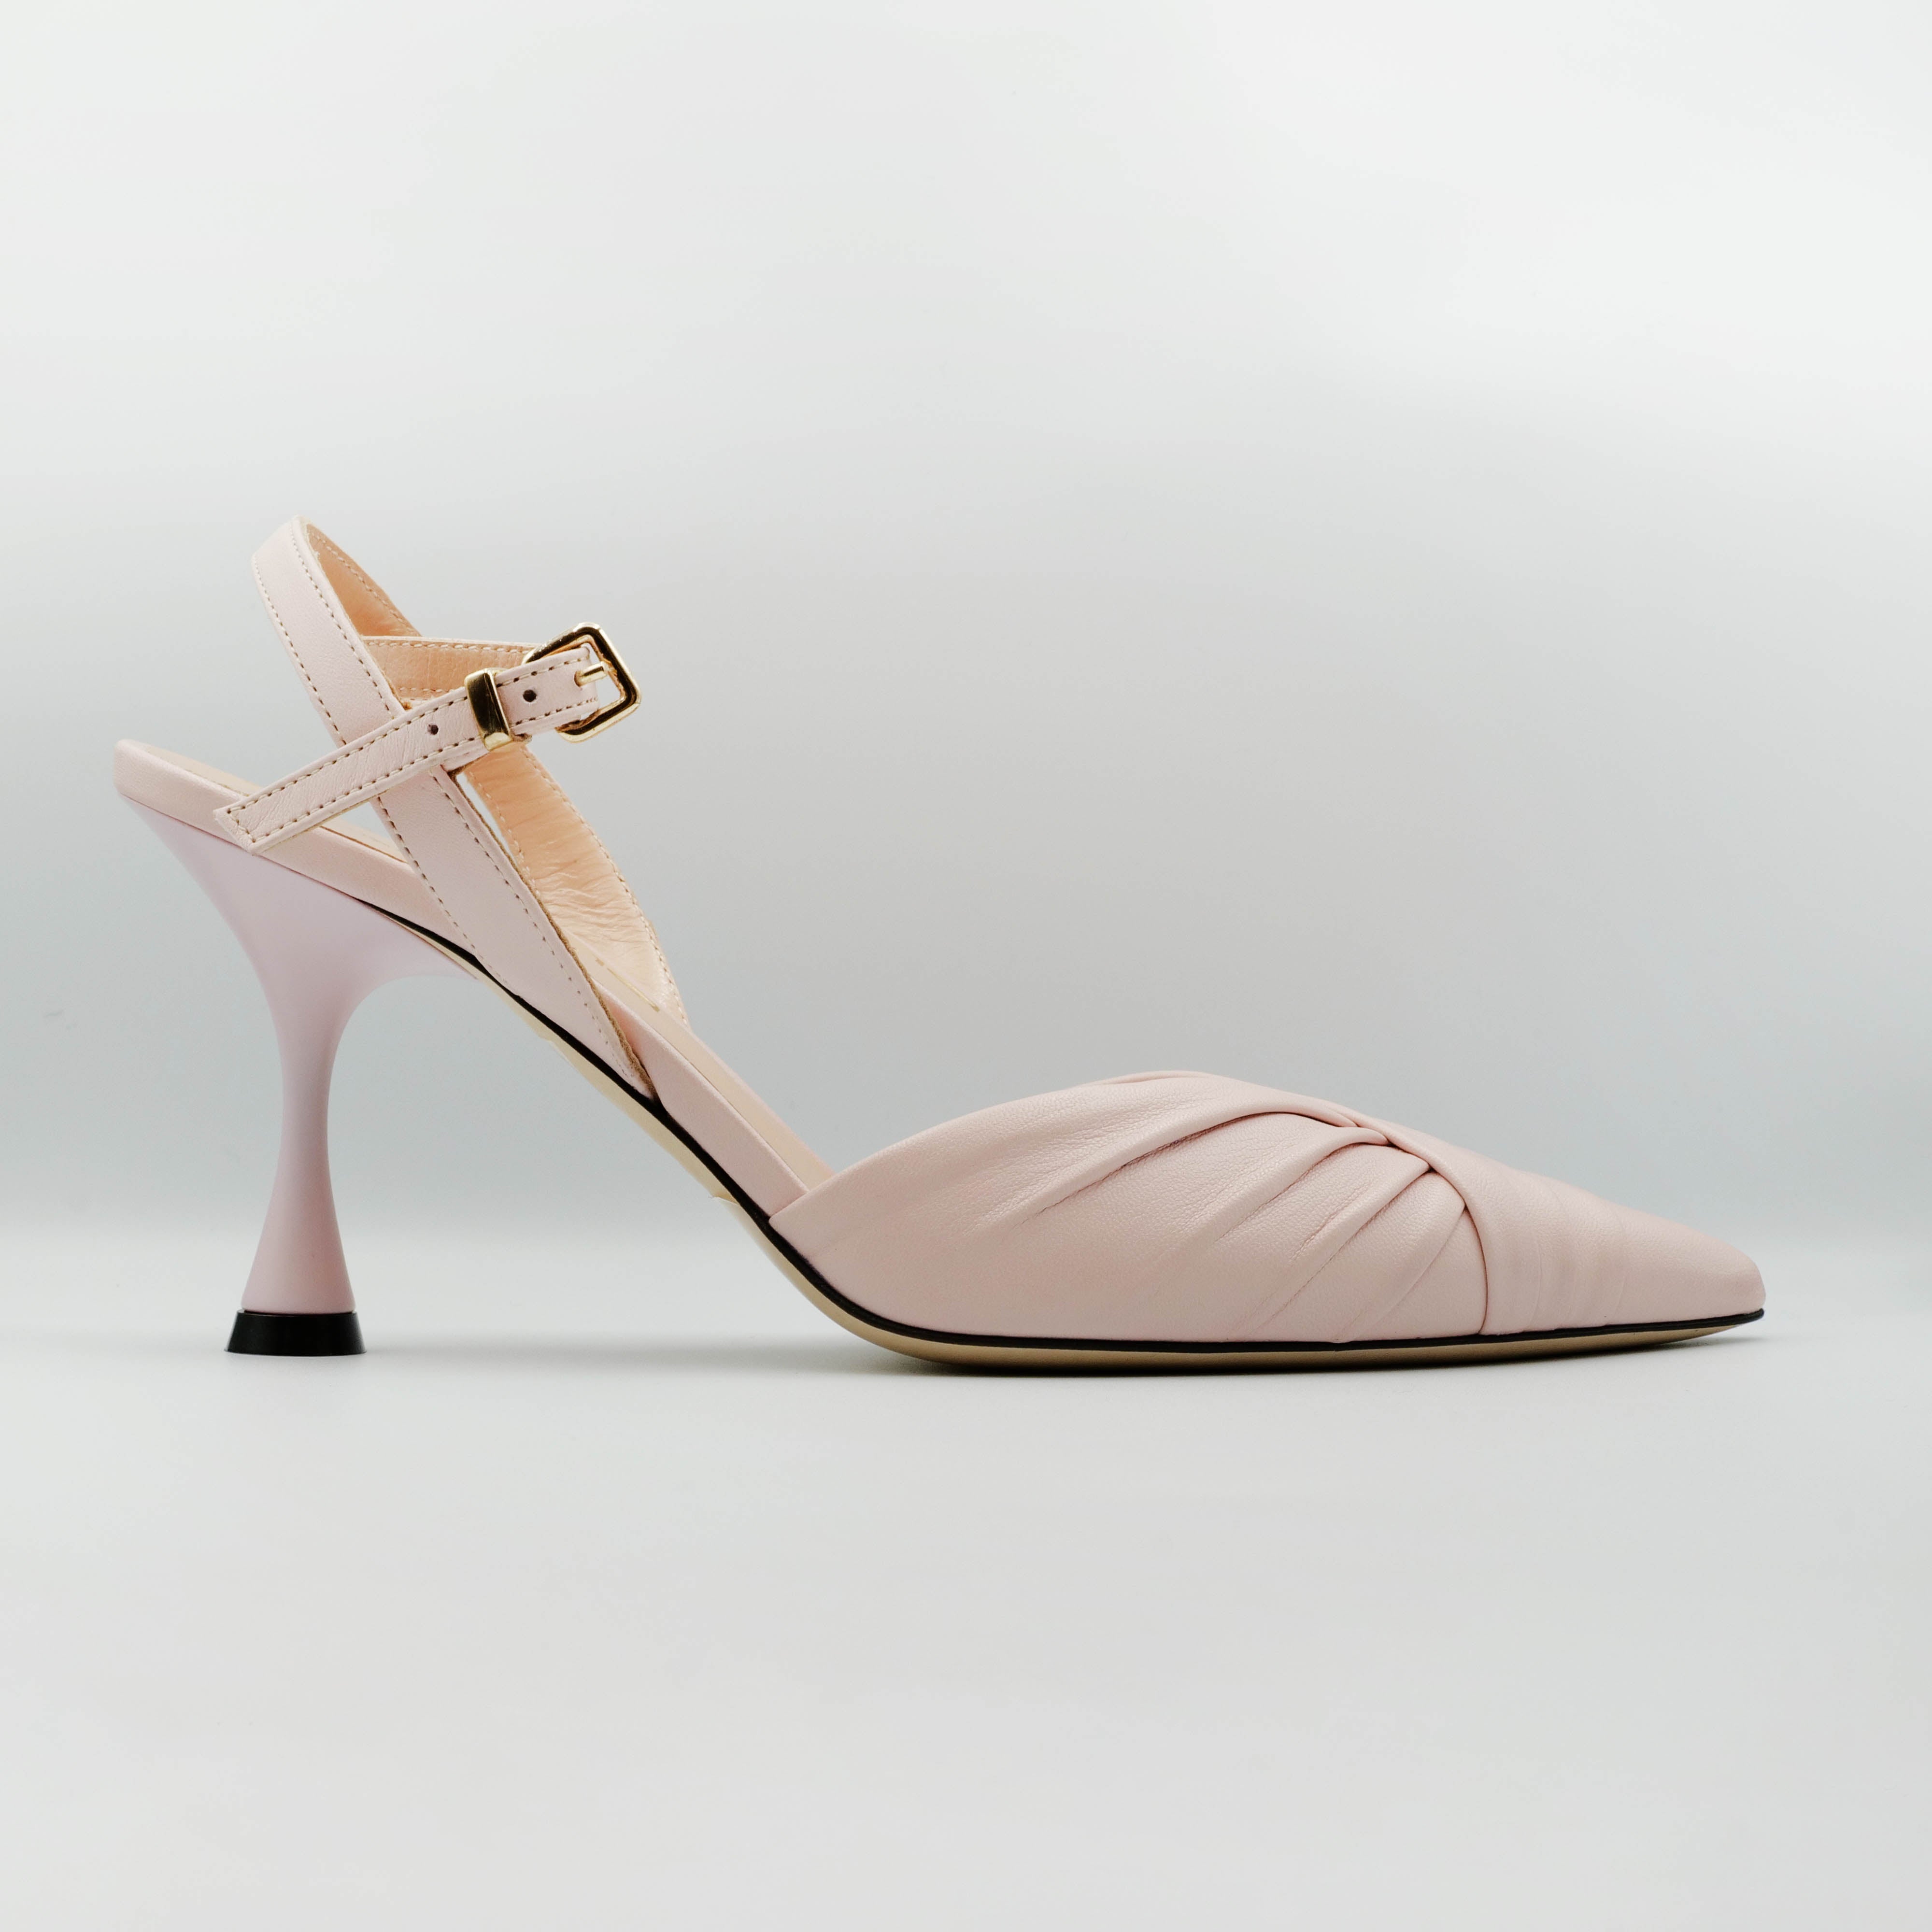 Eva Luna - Slingback  in pelle rosa scollo a V e cinturino alla caviglia